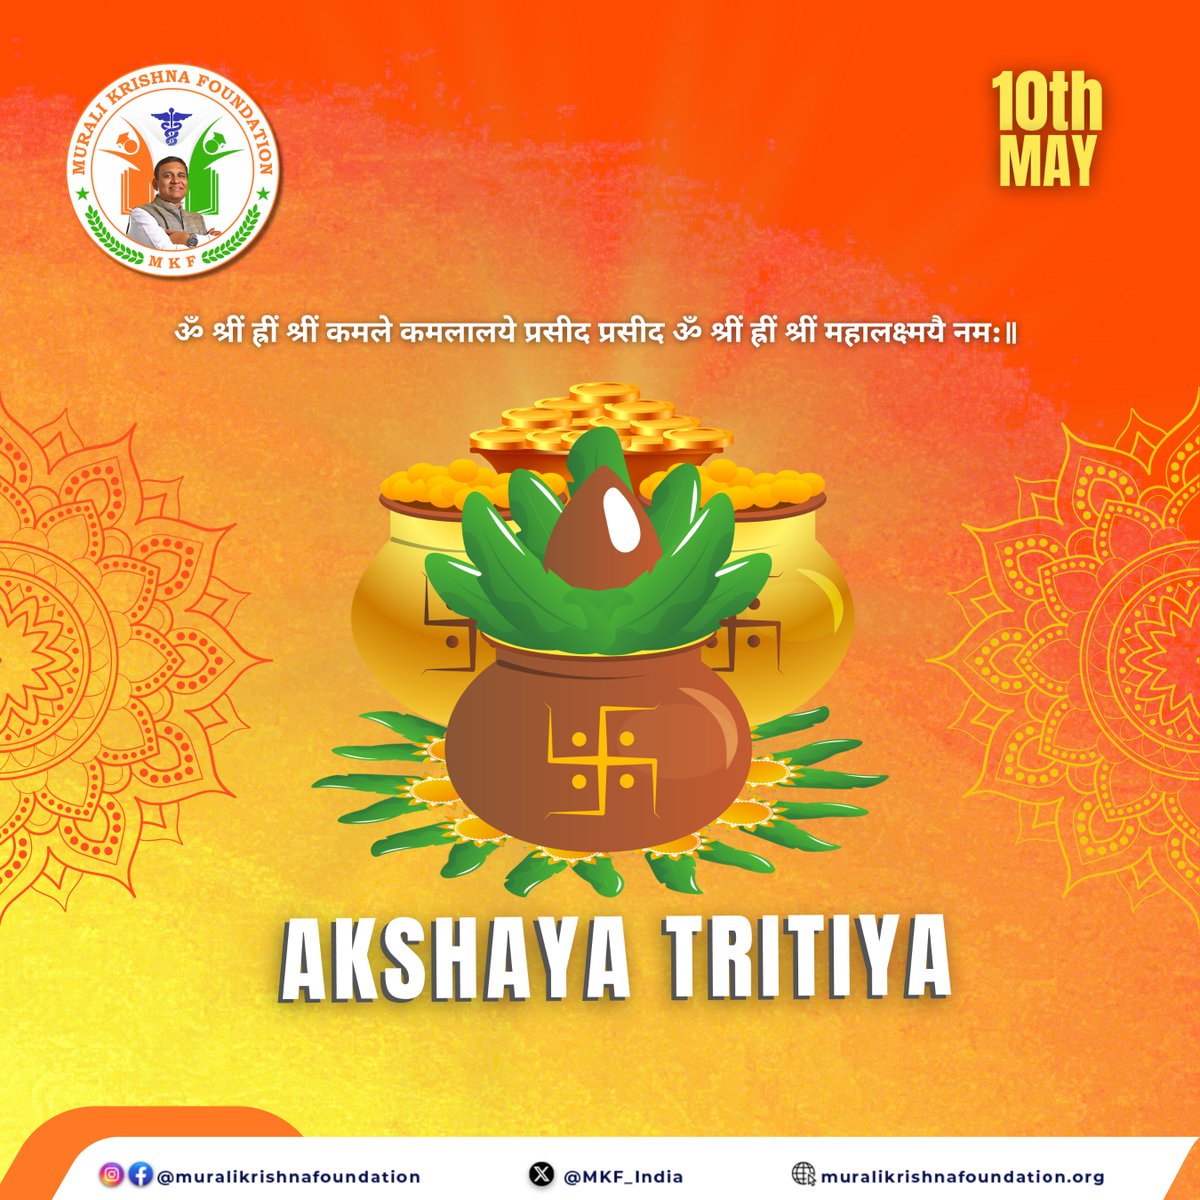 May this Akshaya Tritiya bring endless blessings and prosperity to all.

#muralikrishnafoundation #dmuralikrishna #mkf #MKFoundation #Bargarh #Odisha #AkshayaTritia